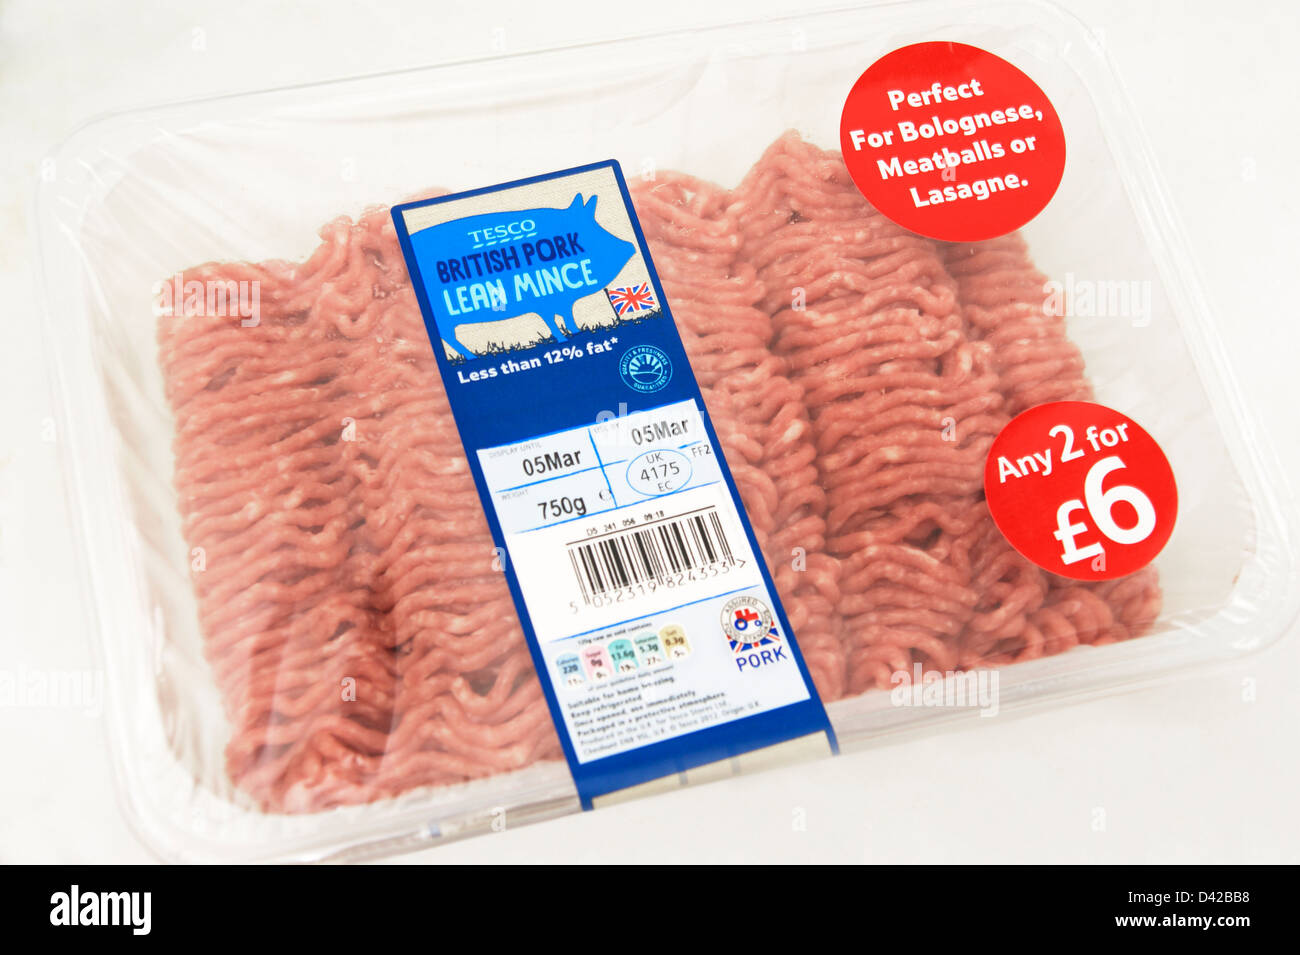 Sans graisse de porc britannique Tesco mince manger sain avec le logo et le Britannique peu rouge symbole du tracteur sur une offre de 2 pour €6 Banque D'Images